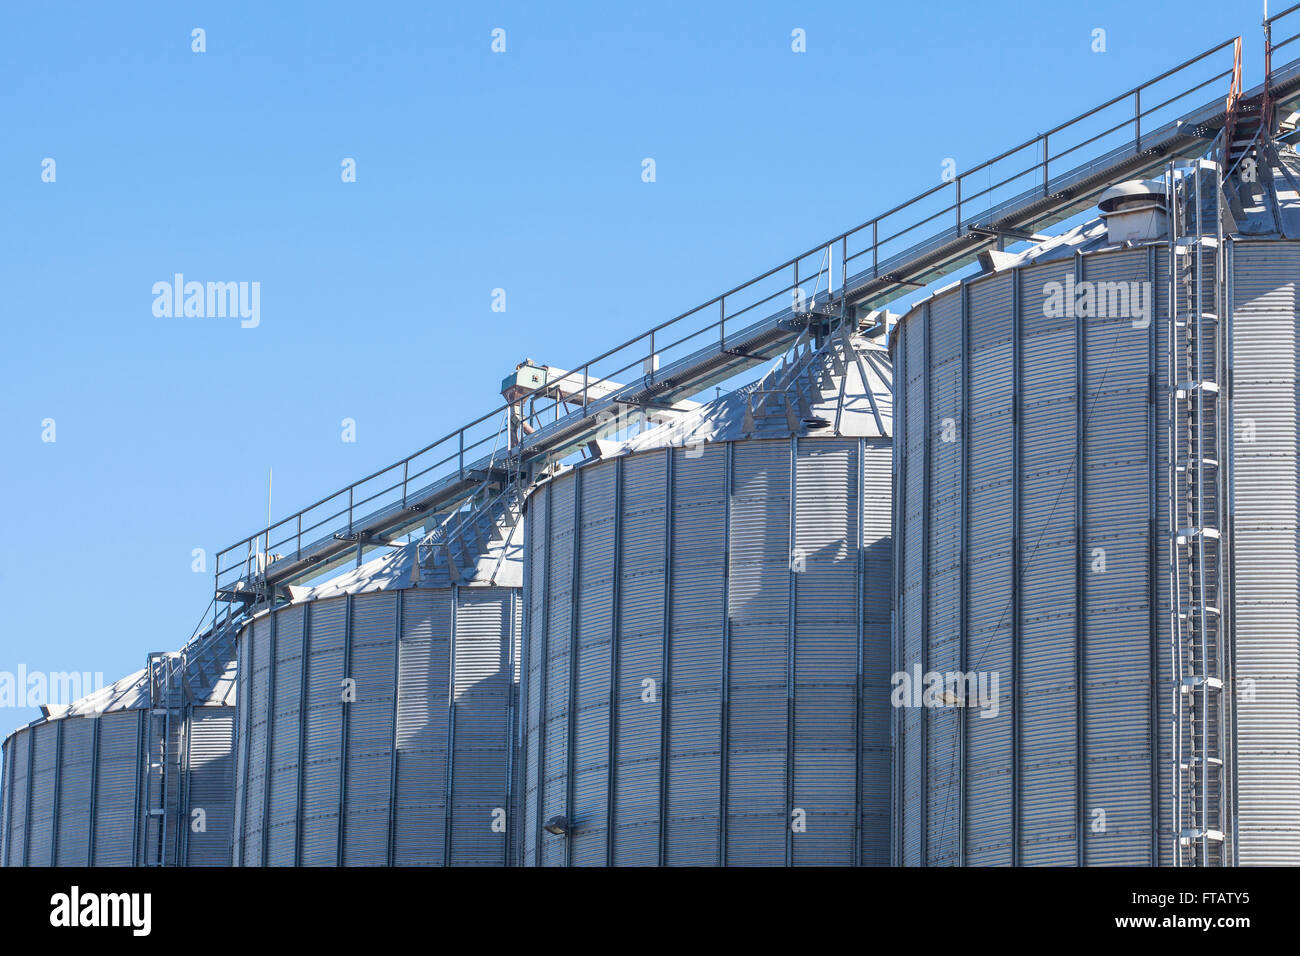 Les réservoirs de stockage de céréales produits sur ciel bleu Banque D'Images